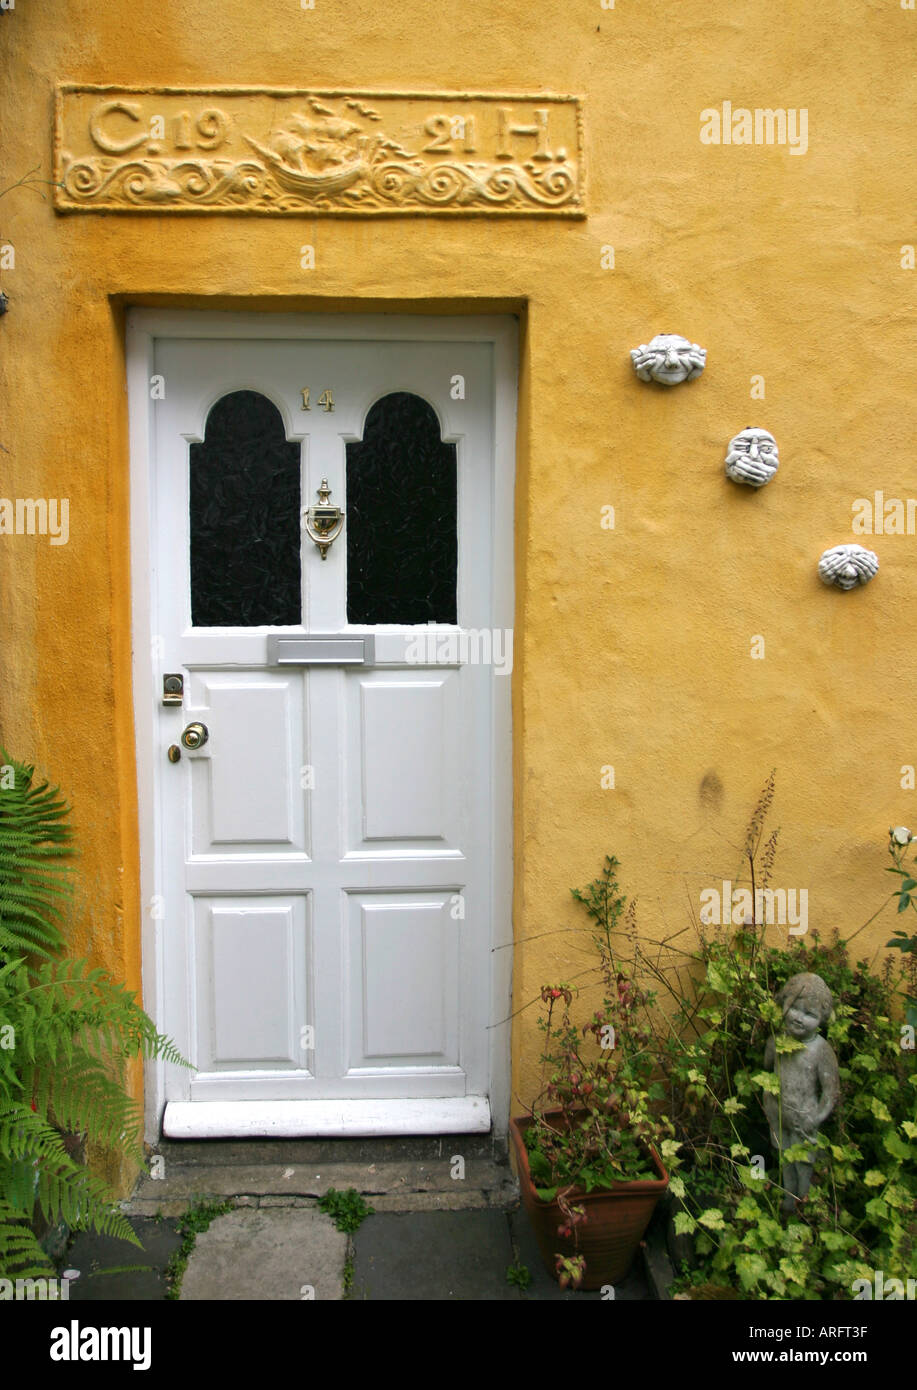 Ferienhaus-Tür mit pargetting und Keramik Masken Stockfoto